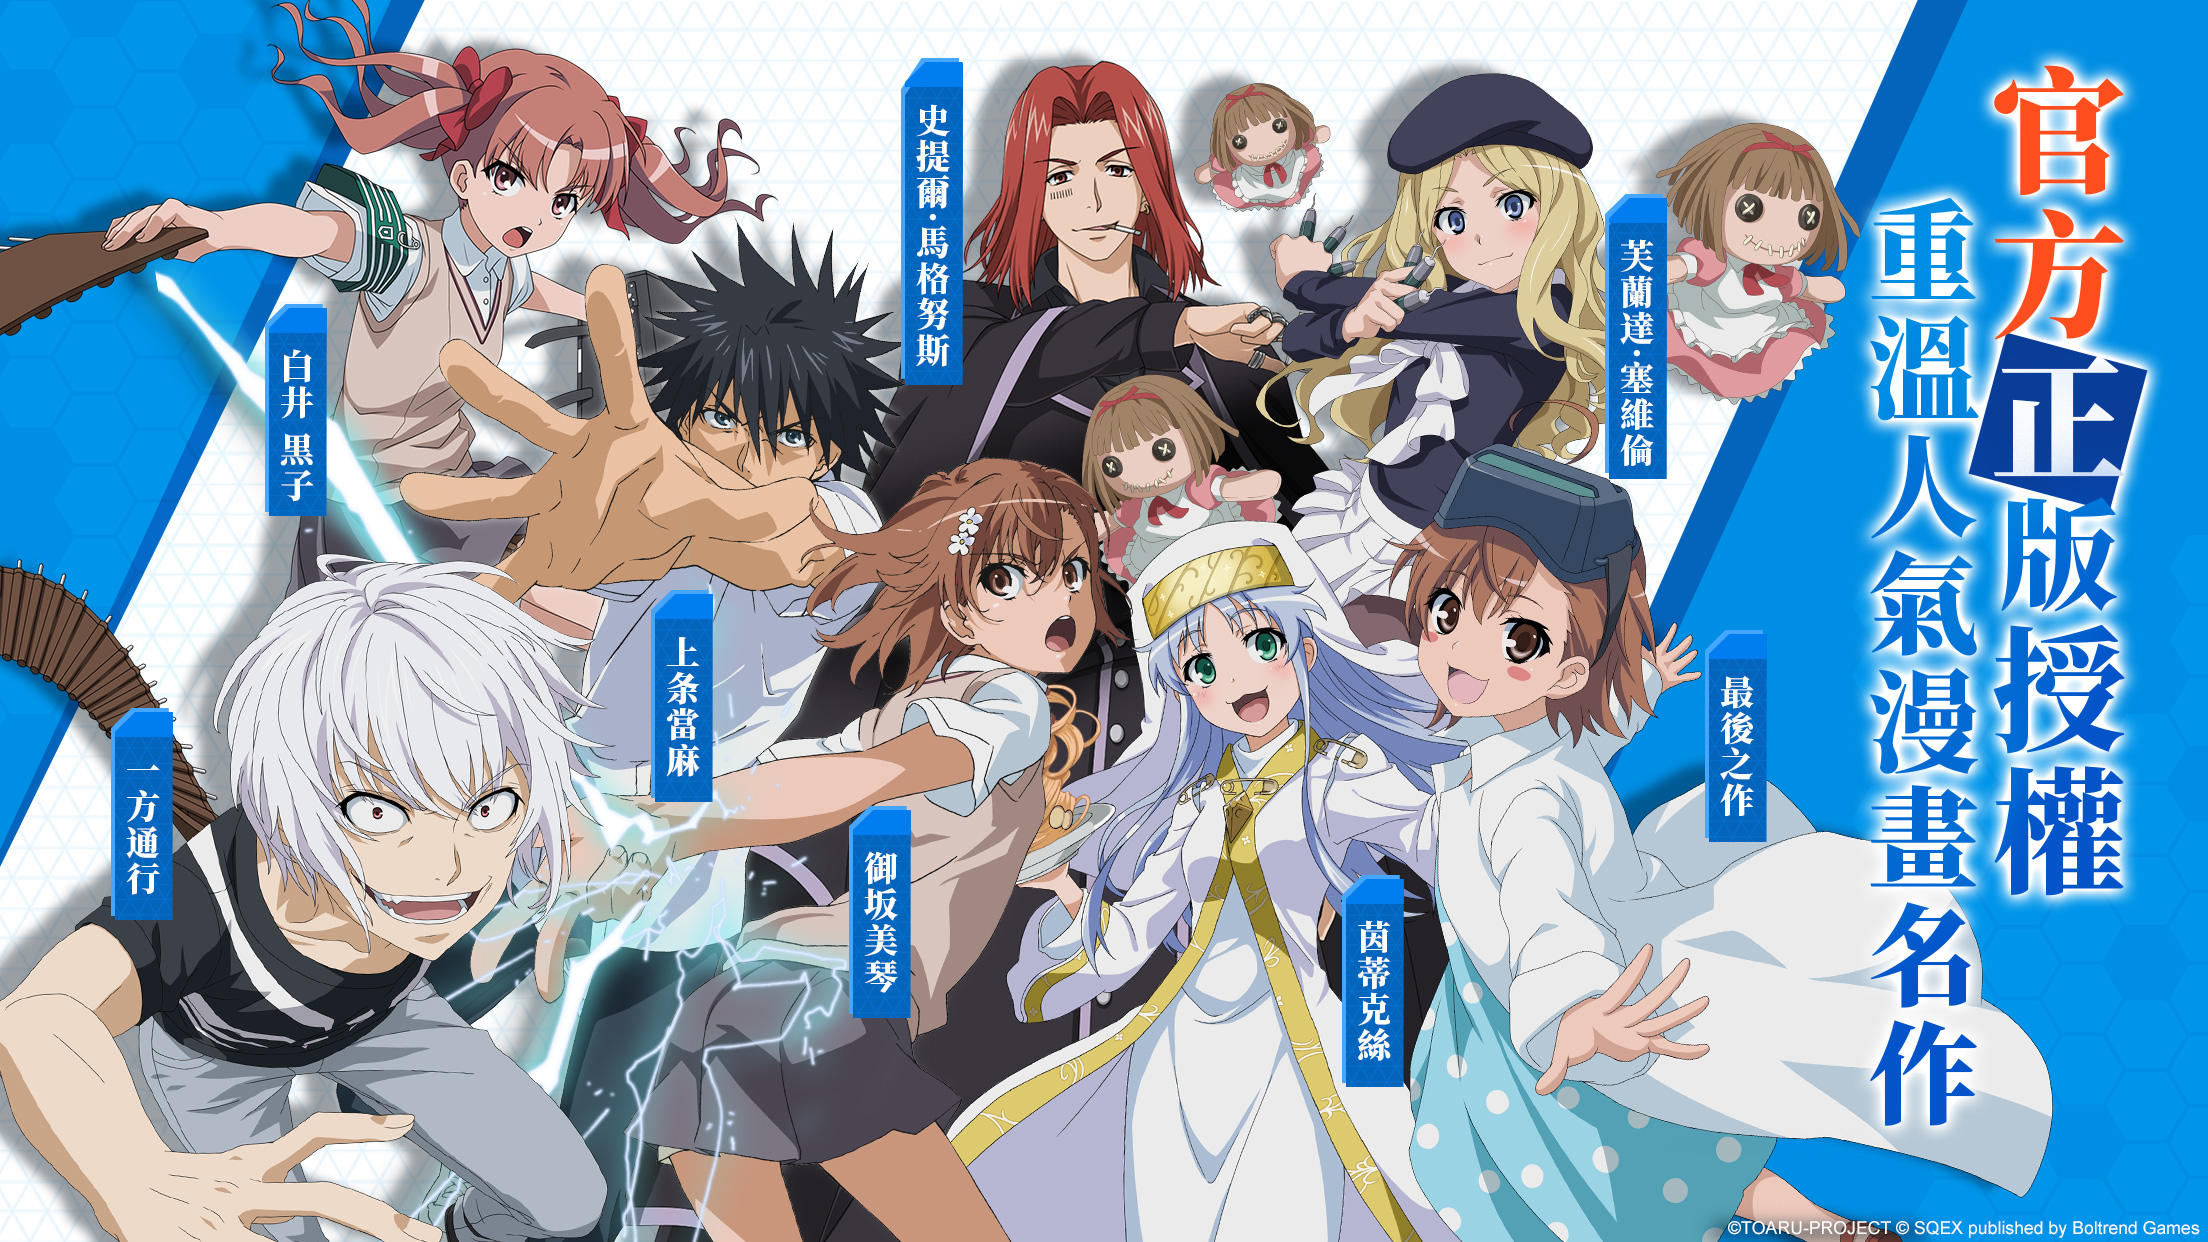 Accelerator A Certain Magical Index Mikoto Misaka Kamijou Touma, Anime,  manga, human, fictional Character png | PNGWing